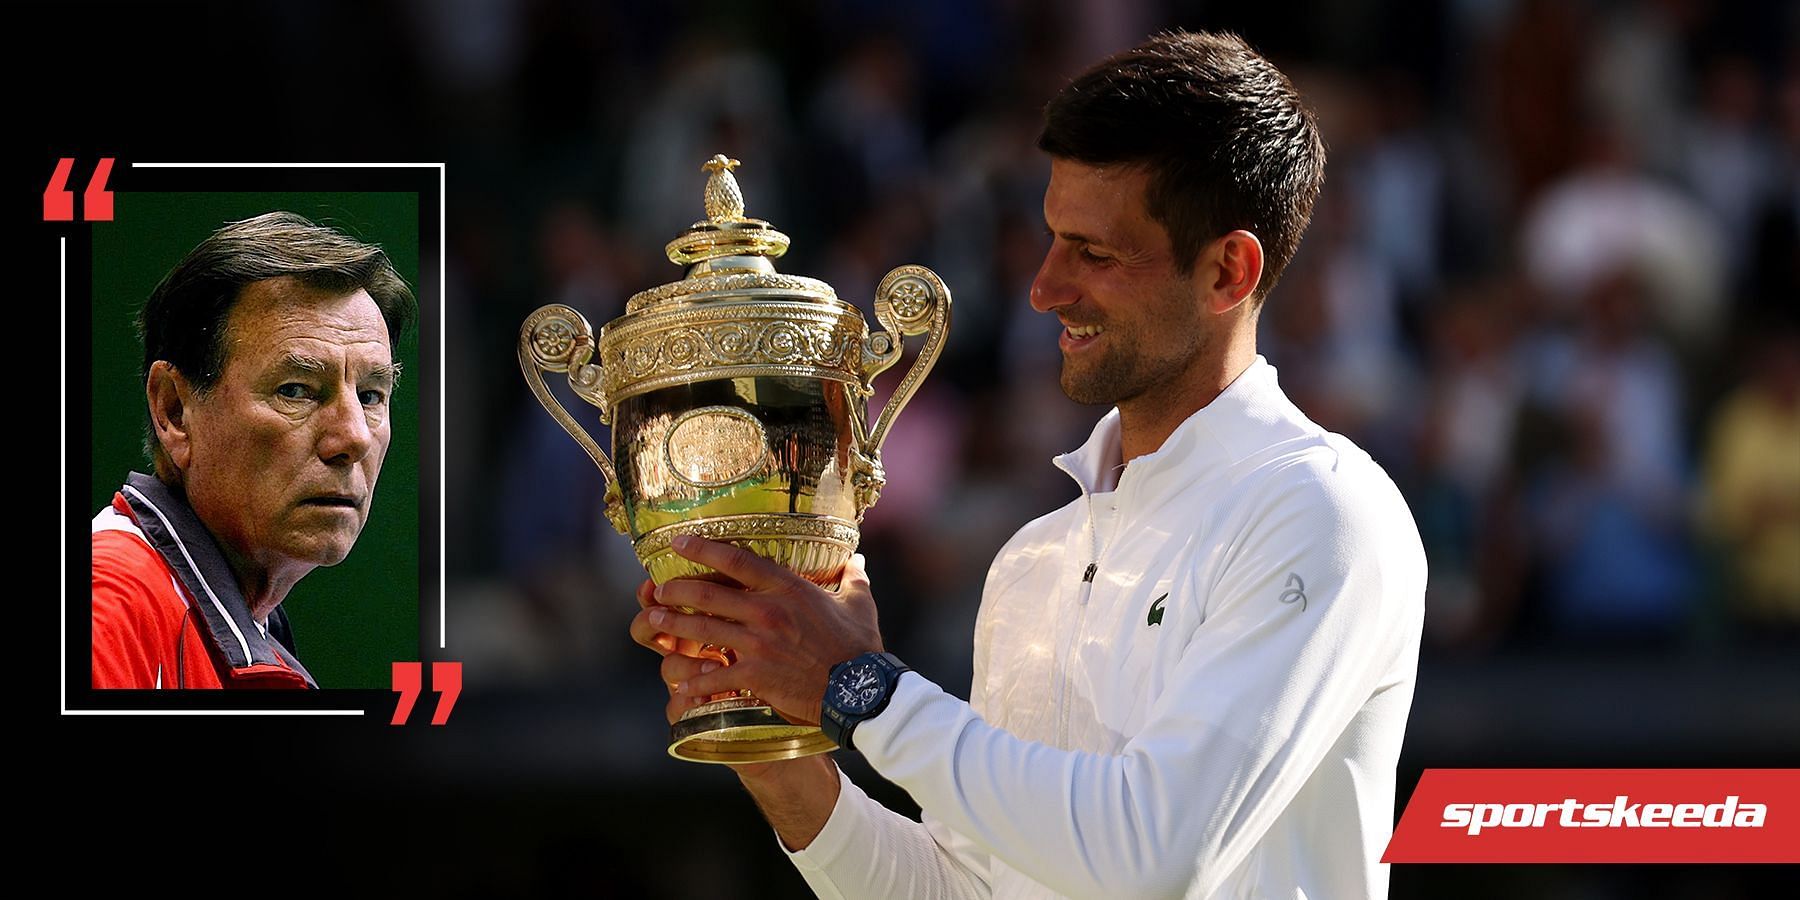 Novak Djokovic beat Nick Kyrgios for the Wimbledon title